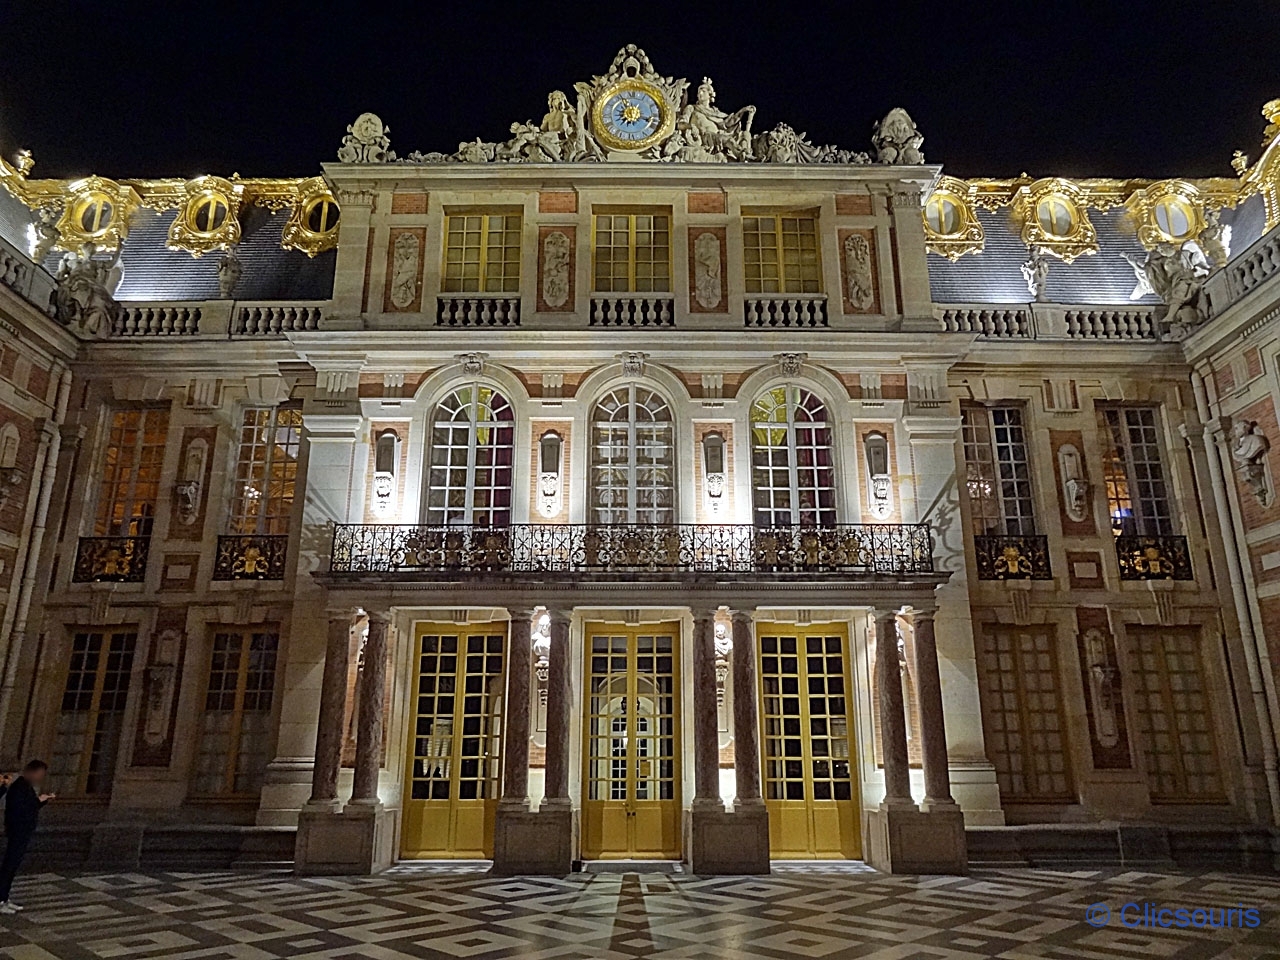 Château de Versailles la nuit cour de Marbre